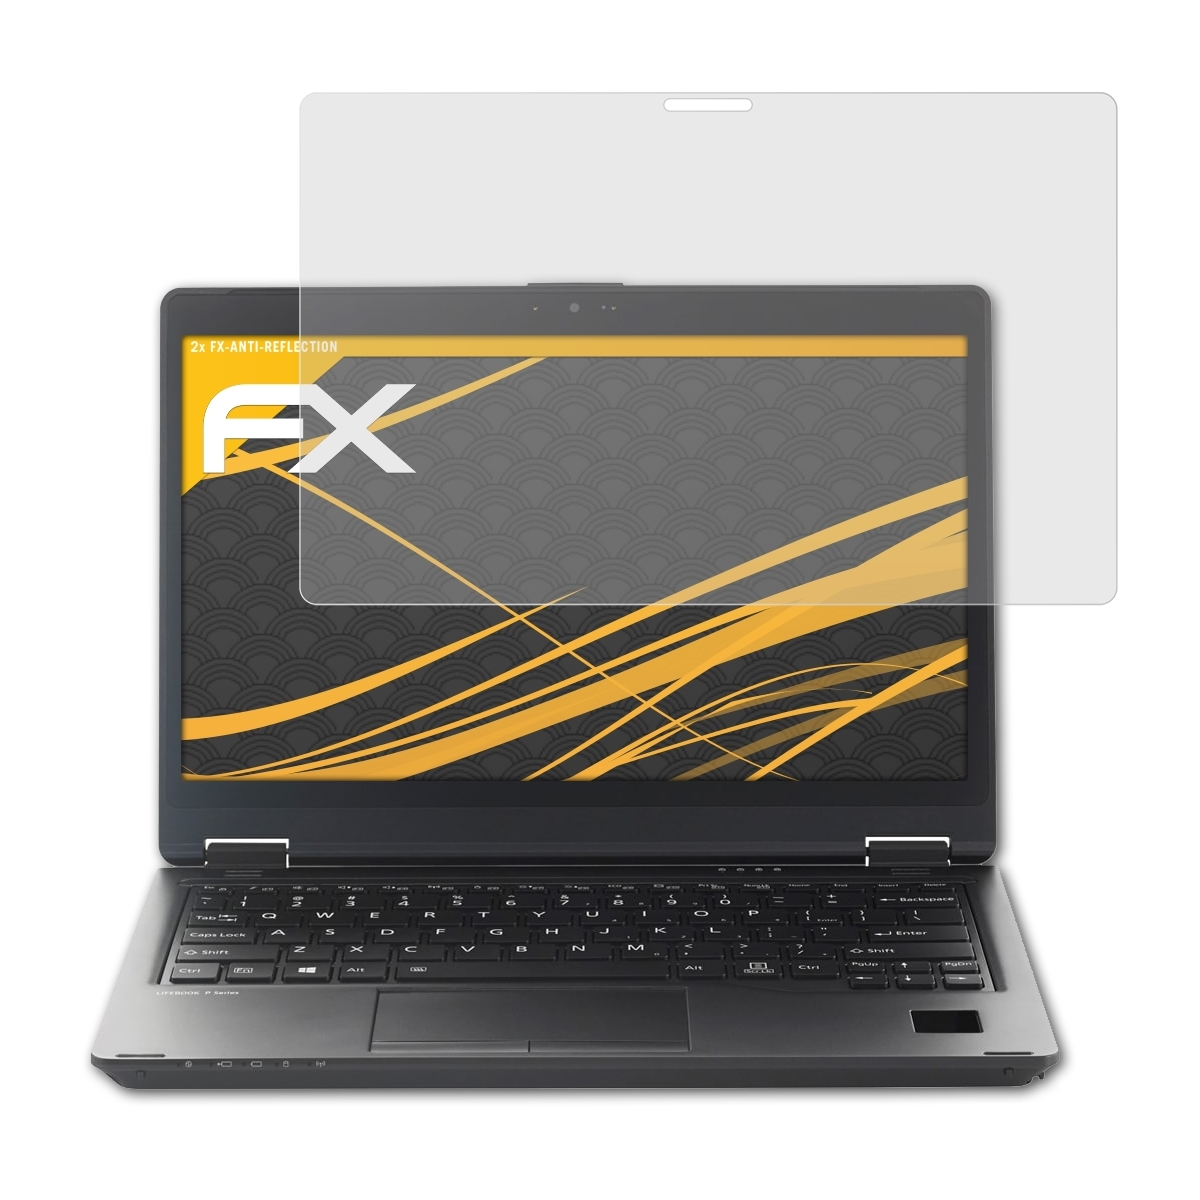 ATFOLIX 2x FX-Antireflex Displayschutz(für Fujitsu Lifebook P728)